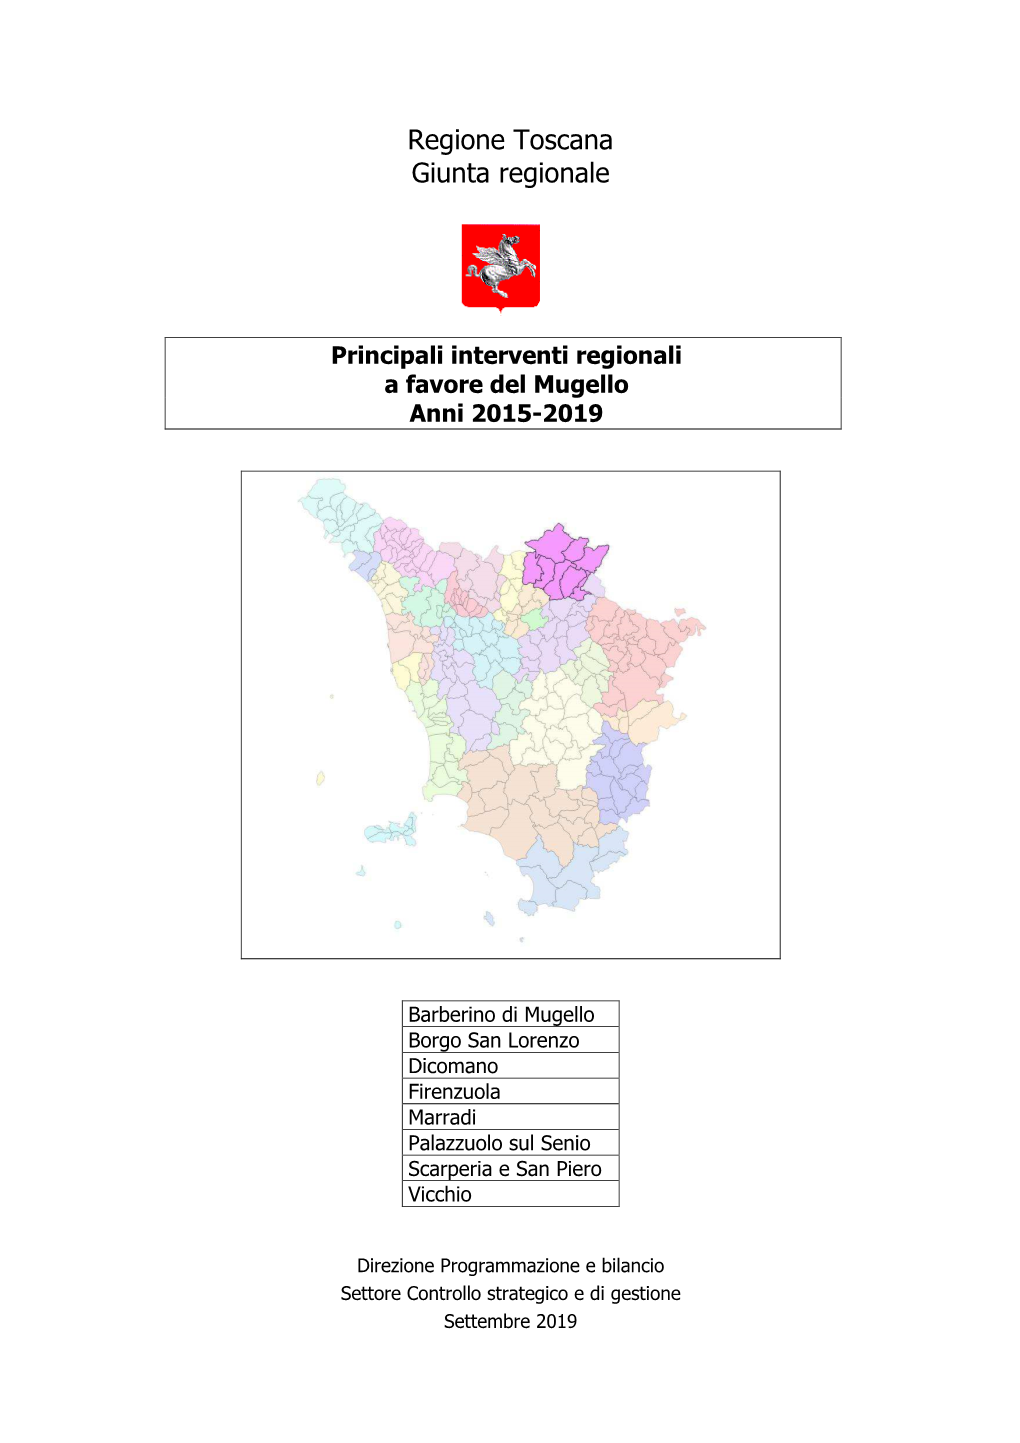 Principali Interventi Regionali a Favore Del Mugello Anni 2015-2019